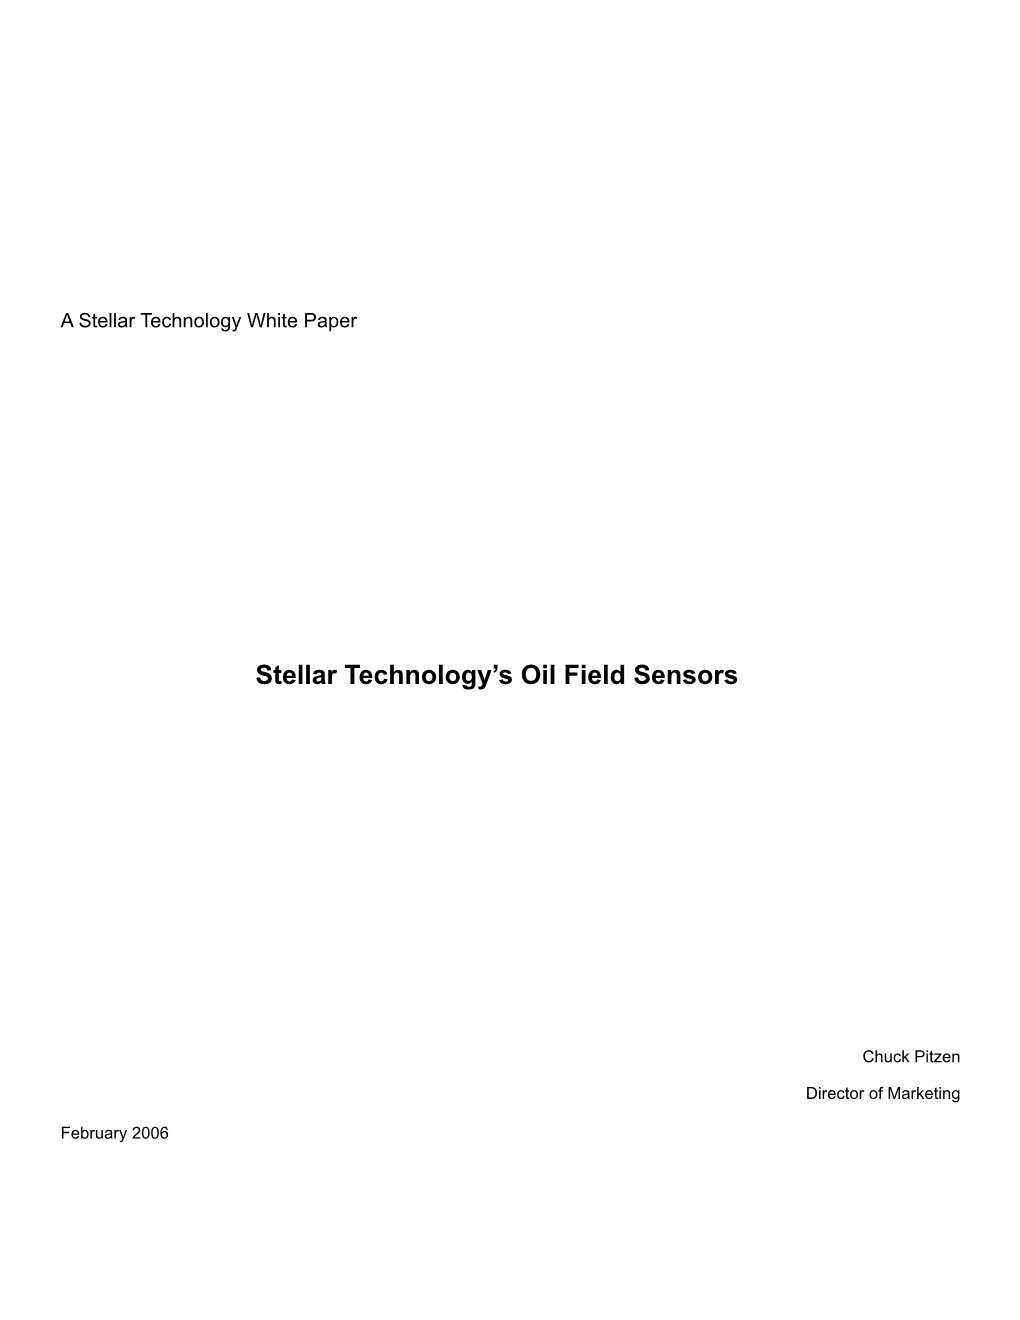 Oil Field Sensors From